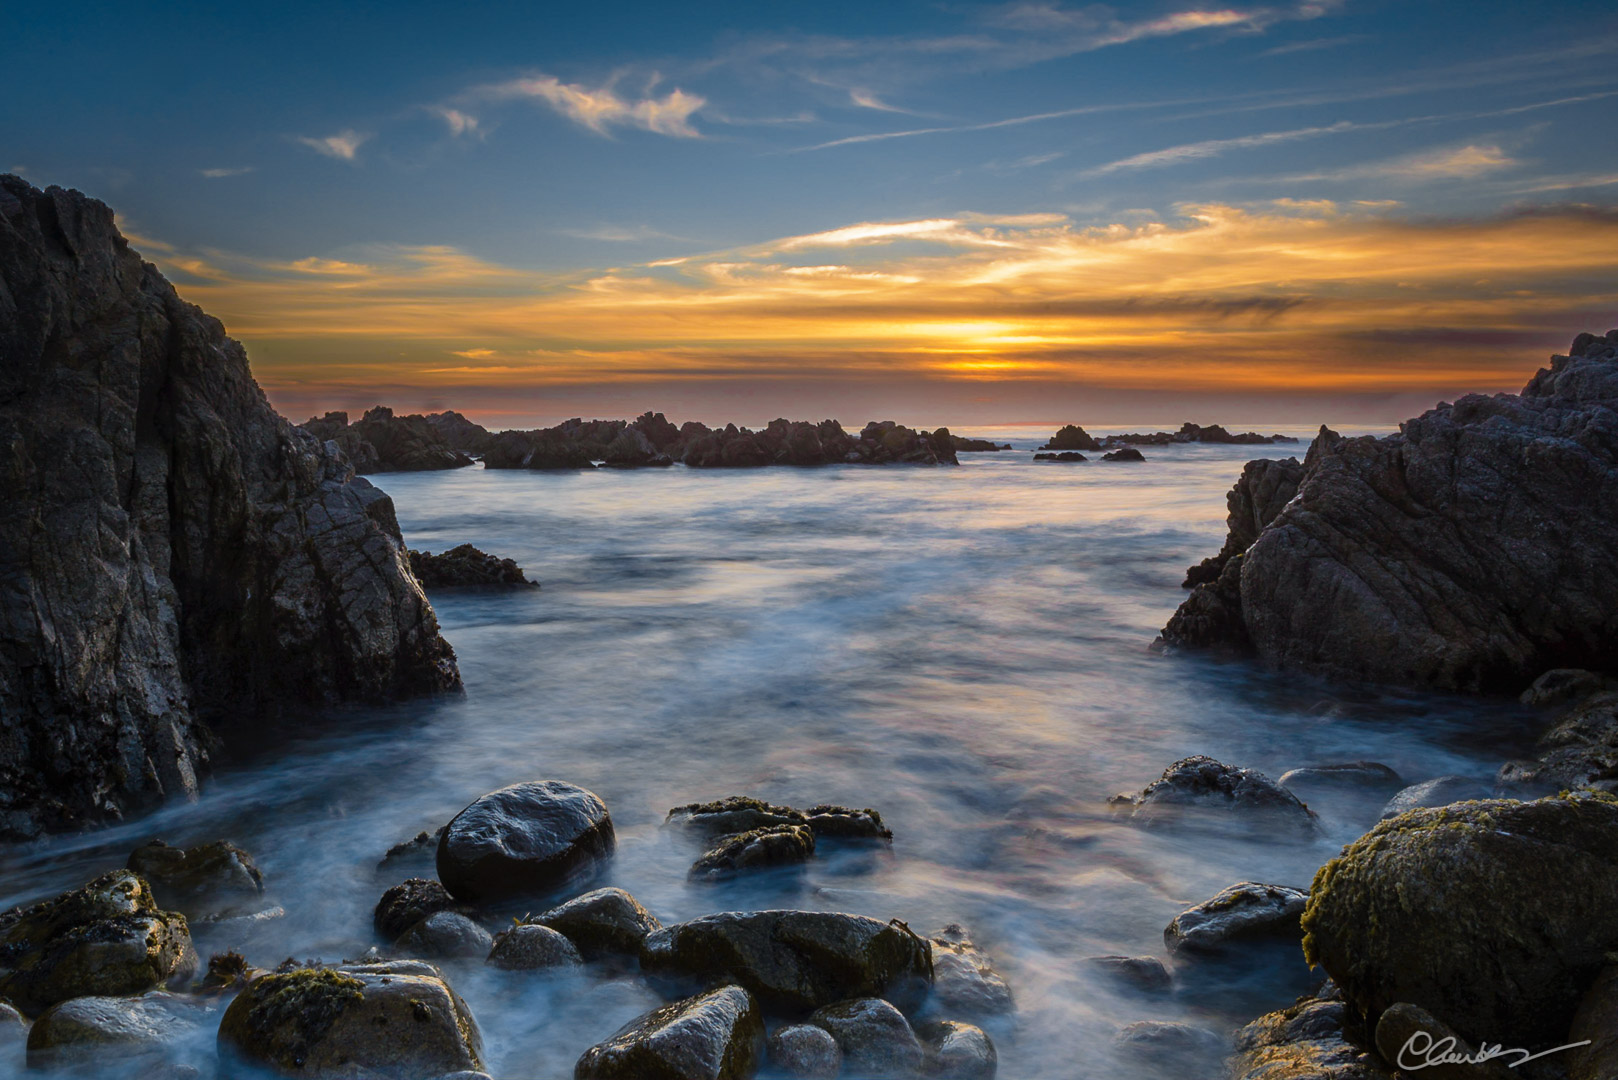 La baie de Montery (Californie) / Monterey Bay (California)